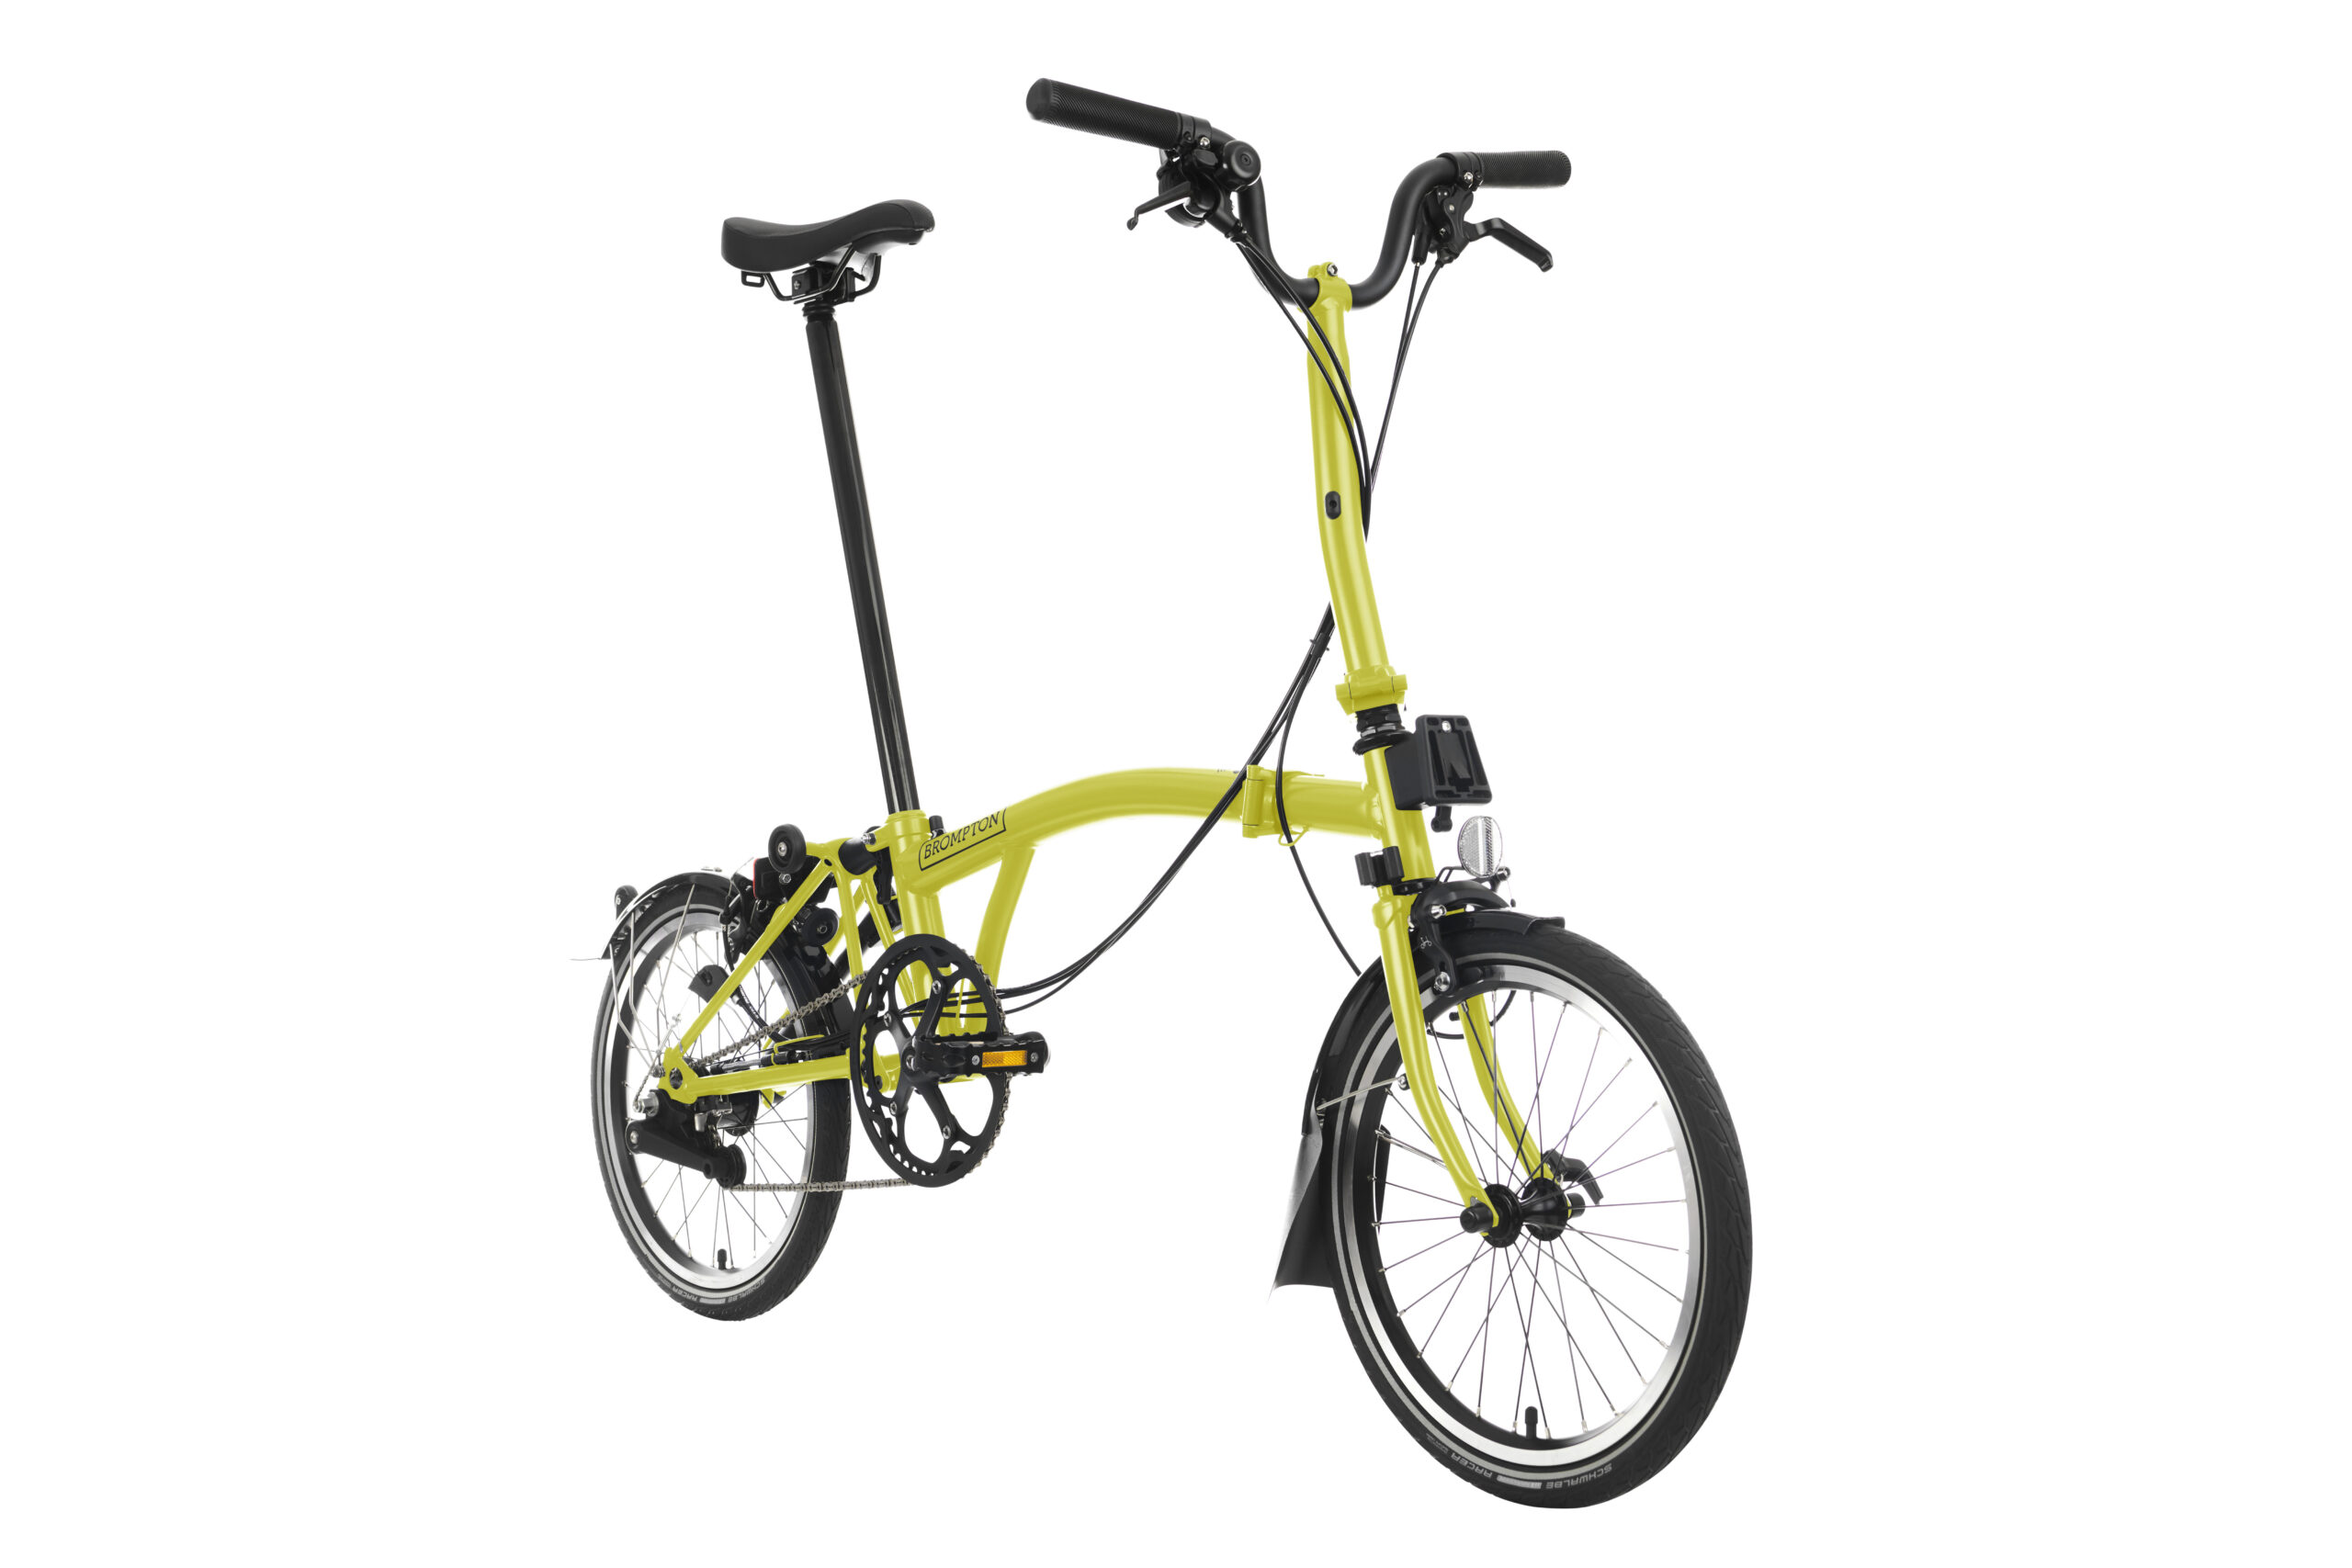 Żółty rower składany Brompton C-line Black - Matt (Kopia) na białym tle.